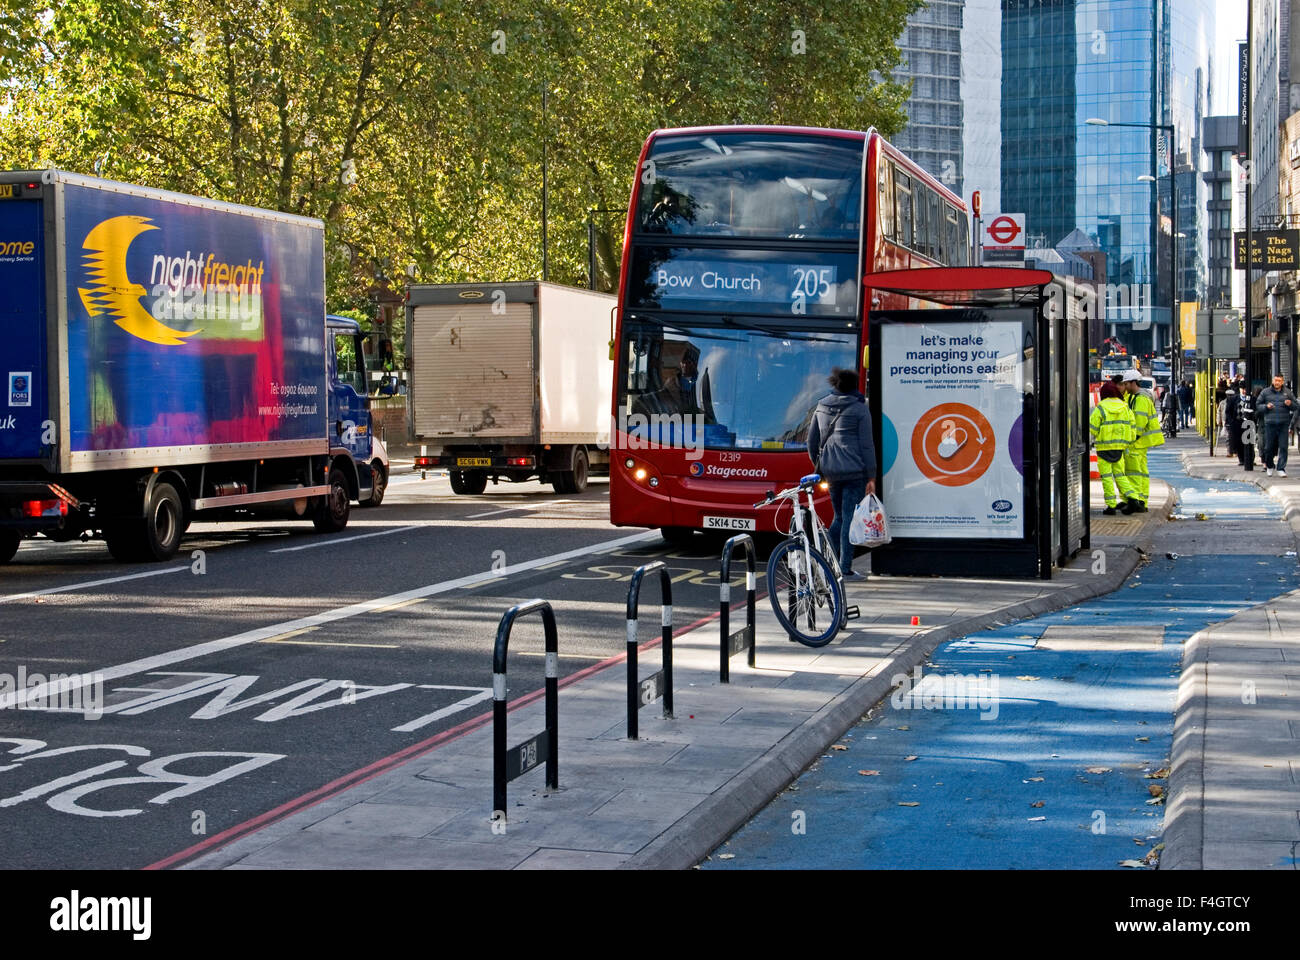 Gli investimenti in London's cycling infrastructure include strutture a fermate di autobus. Quelli attualmente in uso in Whitechapel, East London, super autostrada cycletrack Foto Stock